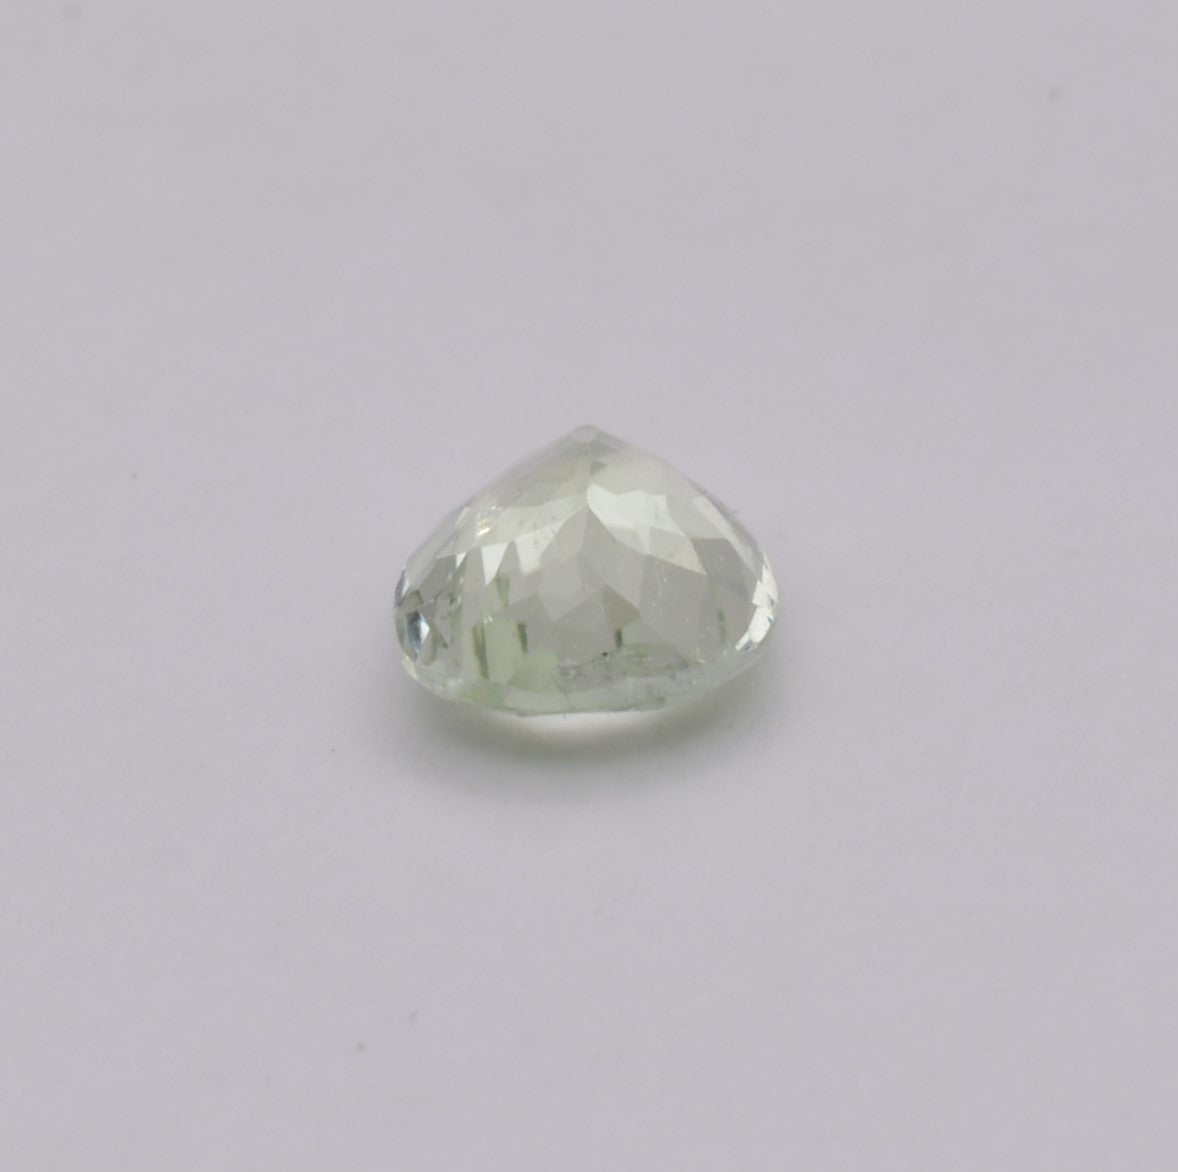 Tourmaline Verte Poire 1,23ct - pierre précieuse - gemme